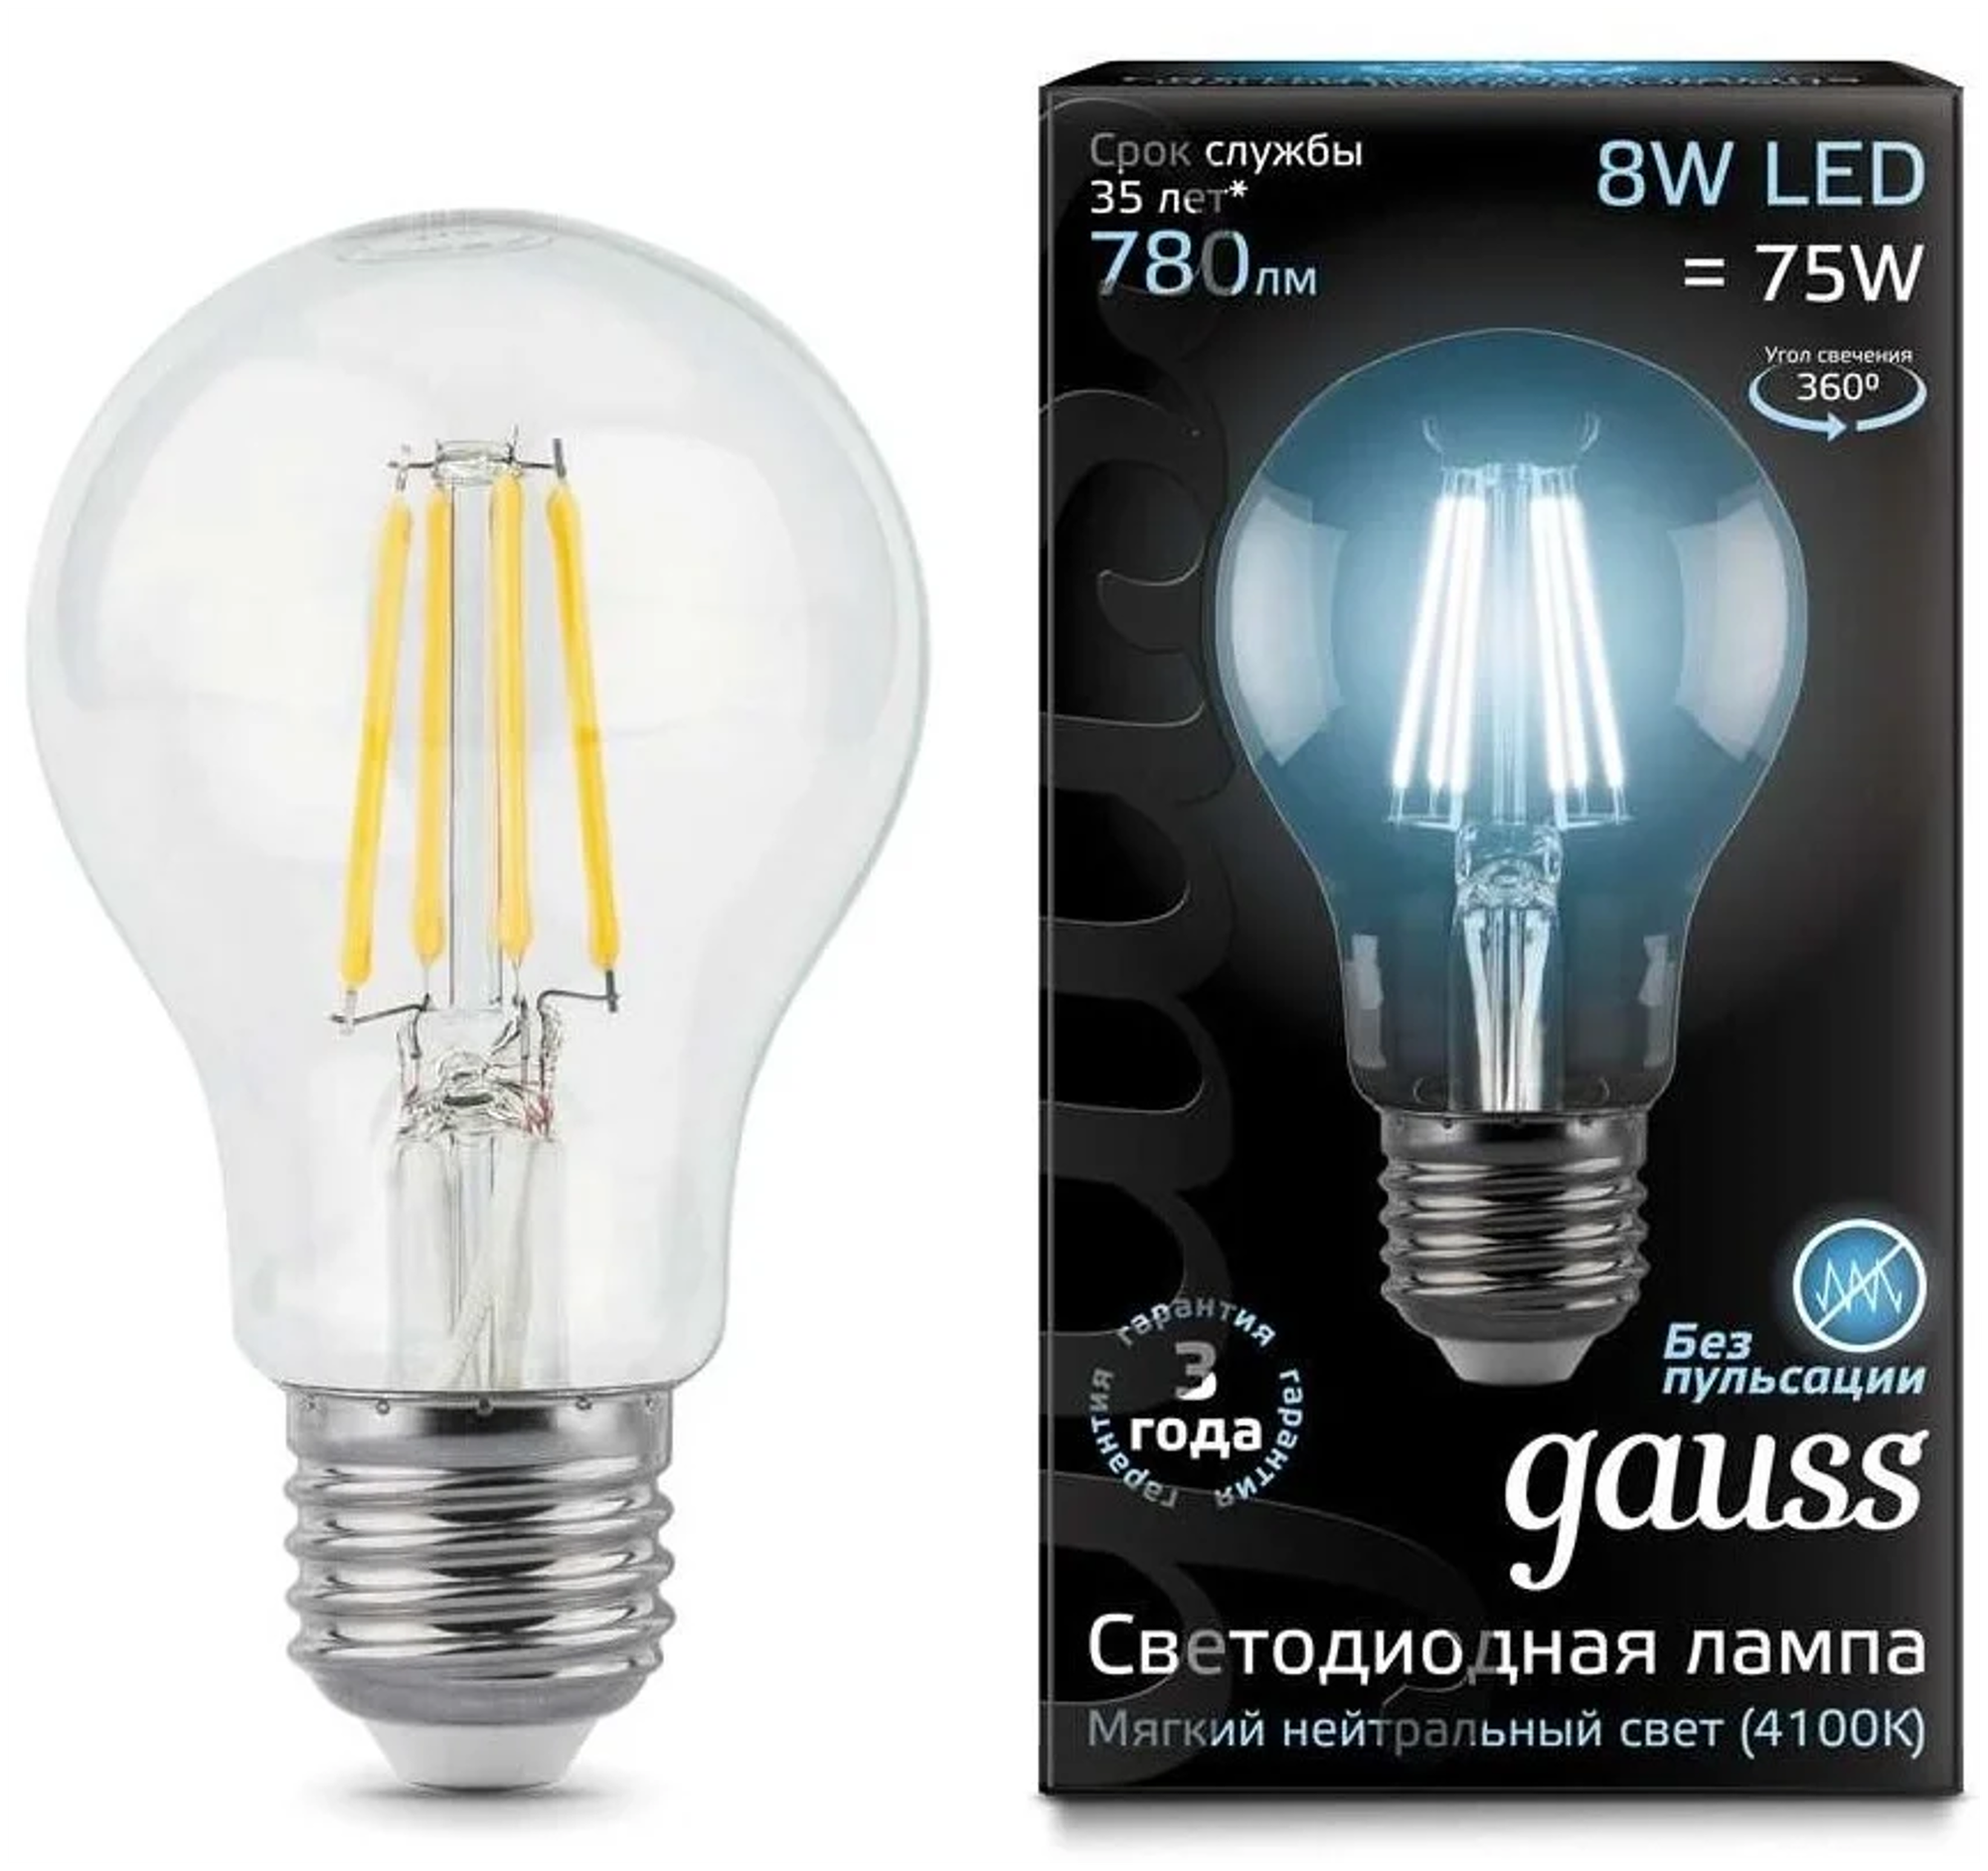 Gauss Лампа Filament А60 8W 780lm 4100К Е27 LED